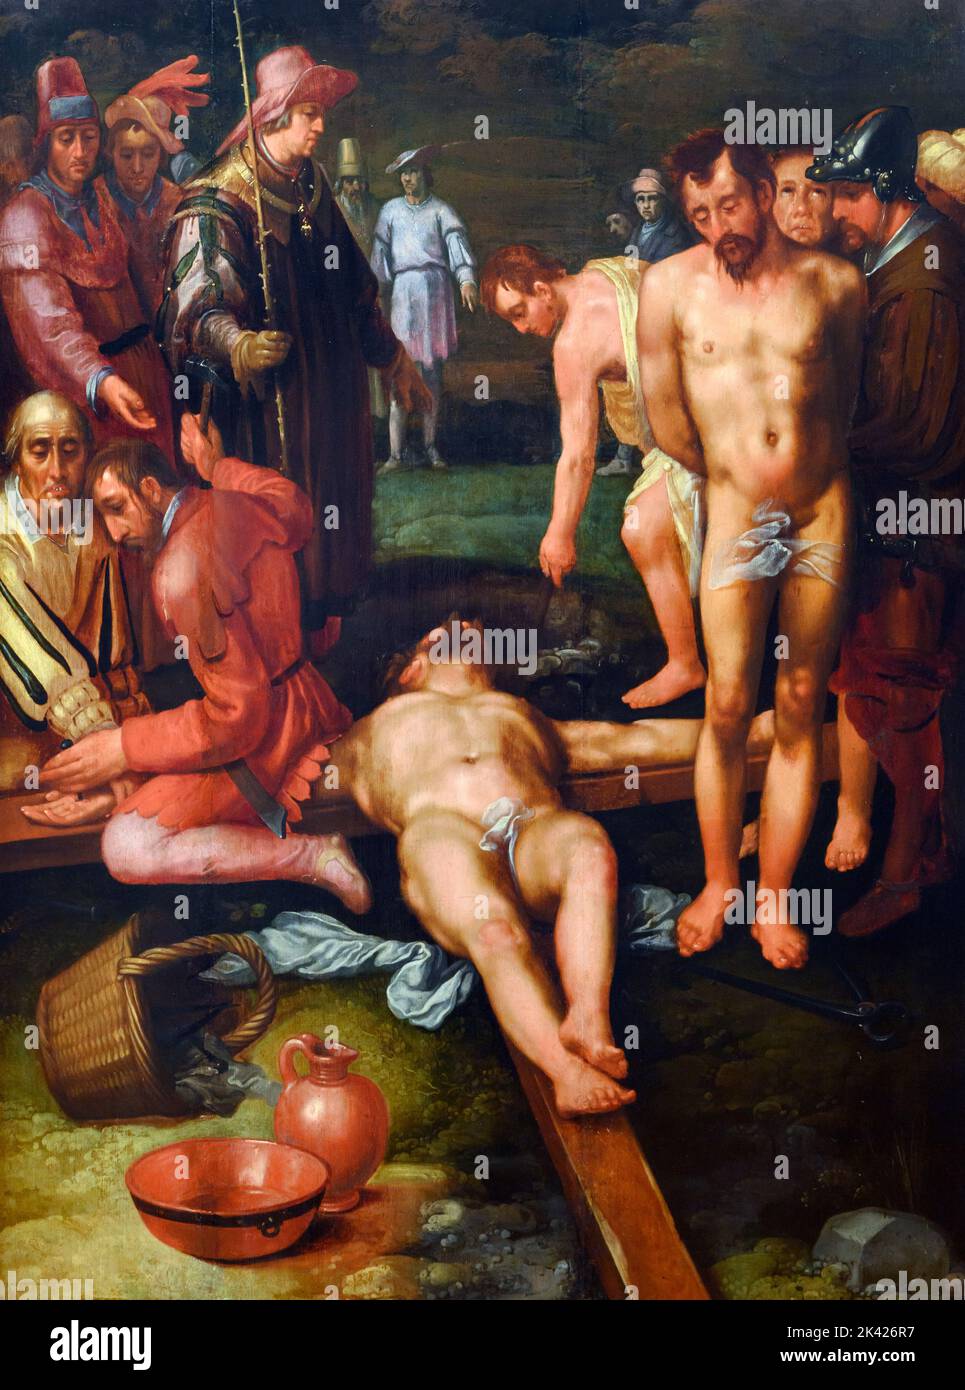 Cornelis van Haarlem. Christus wird vom holländischen Maler des Goldenen Zeitalters, Cornelis Corneliszoon van Haarlem (1562-1638), Öl auf Leinwand, c. 1600-1610 Stockfoto